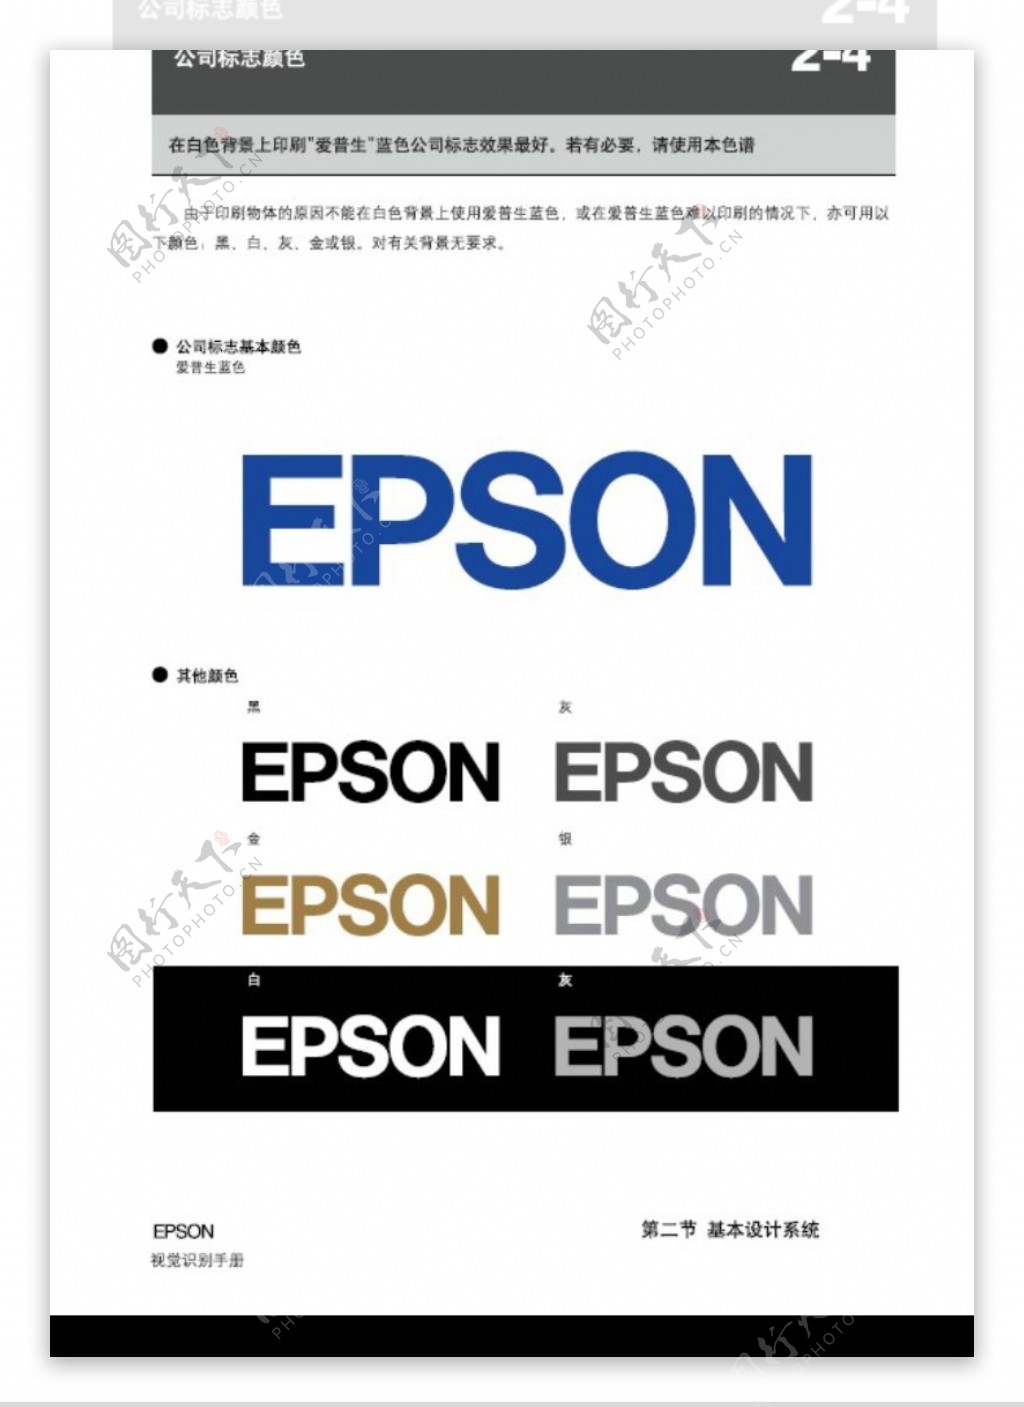 EPSON0013